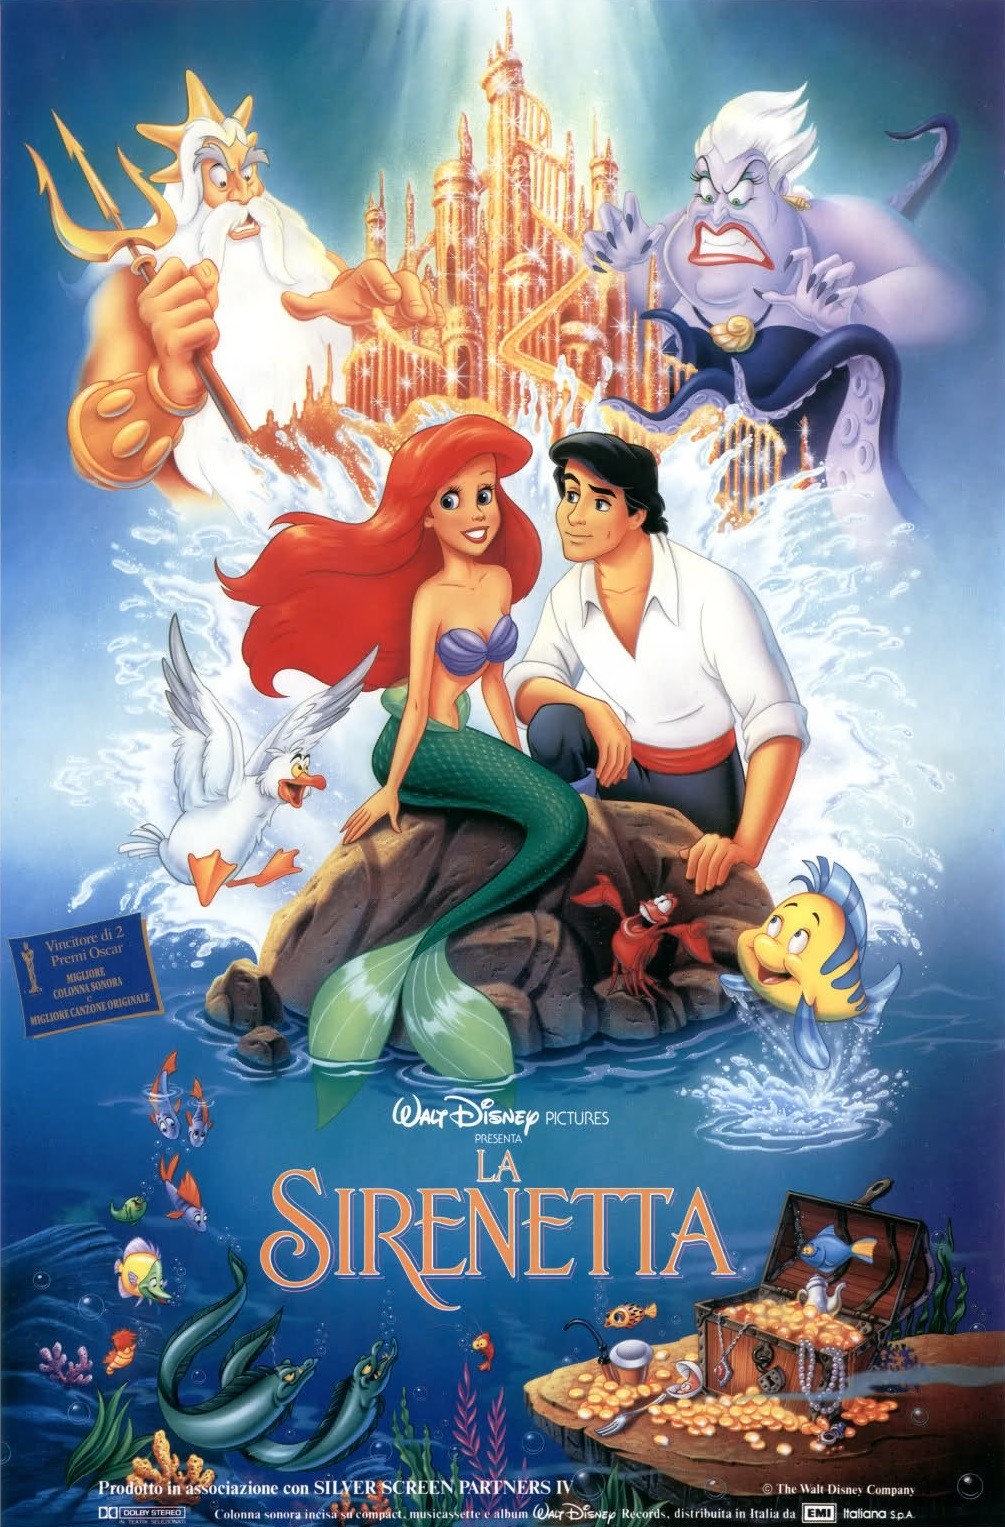 La sirenetta: alcune curiosità del Capolavoro del Rinascimento Disney